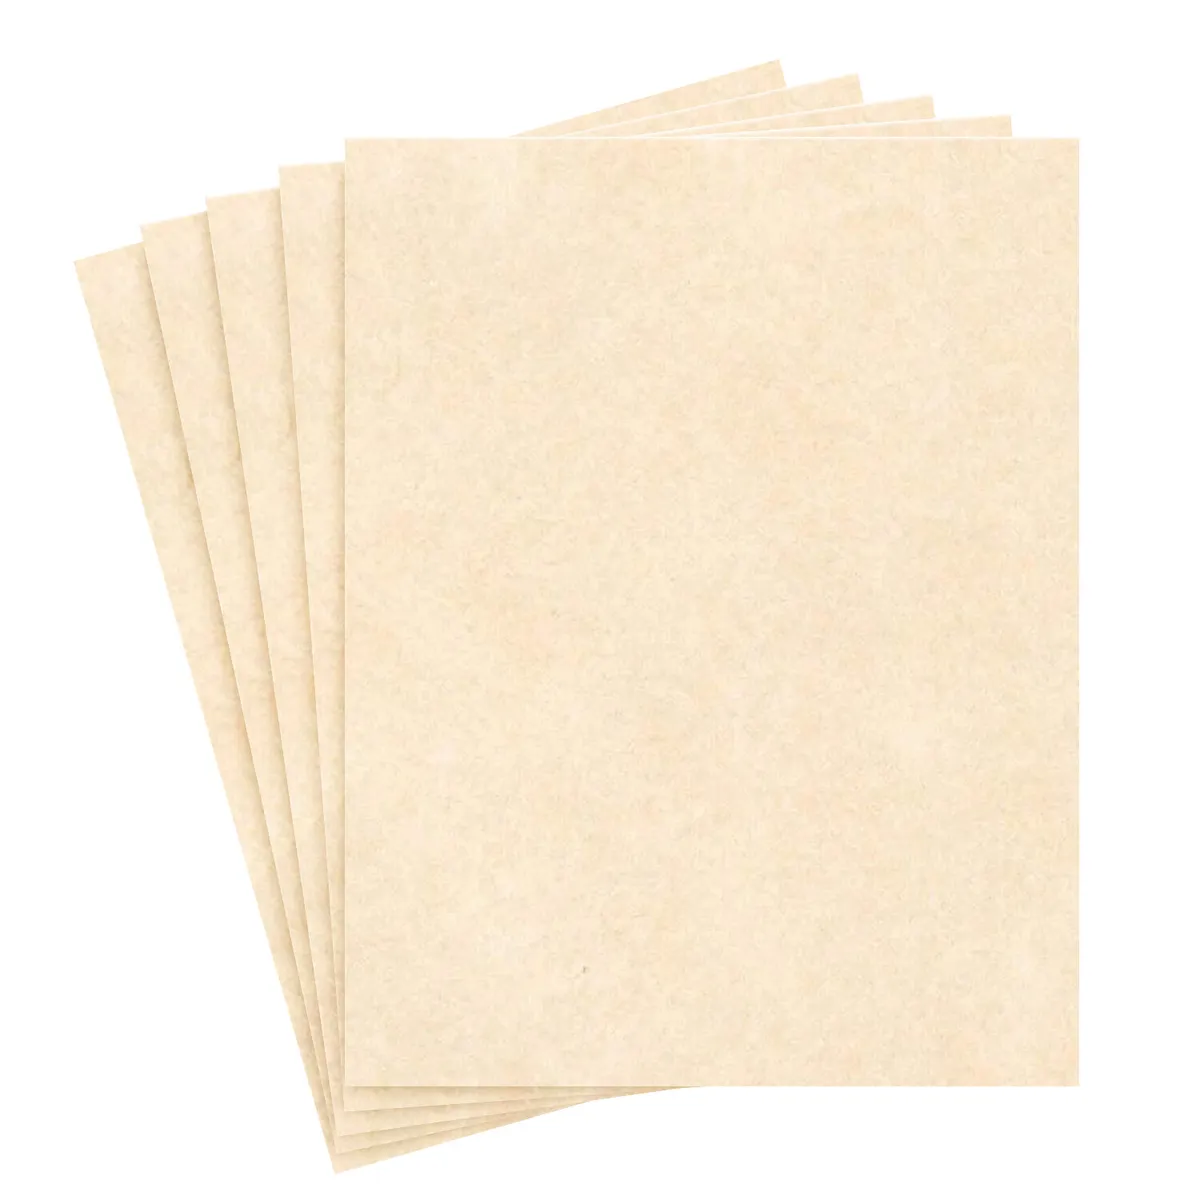  JAM PAPER Parchment 24lb Paper - 90 GSM - 8.5 x 11